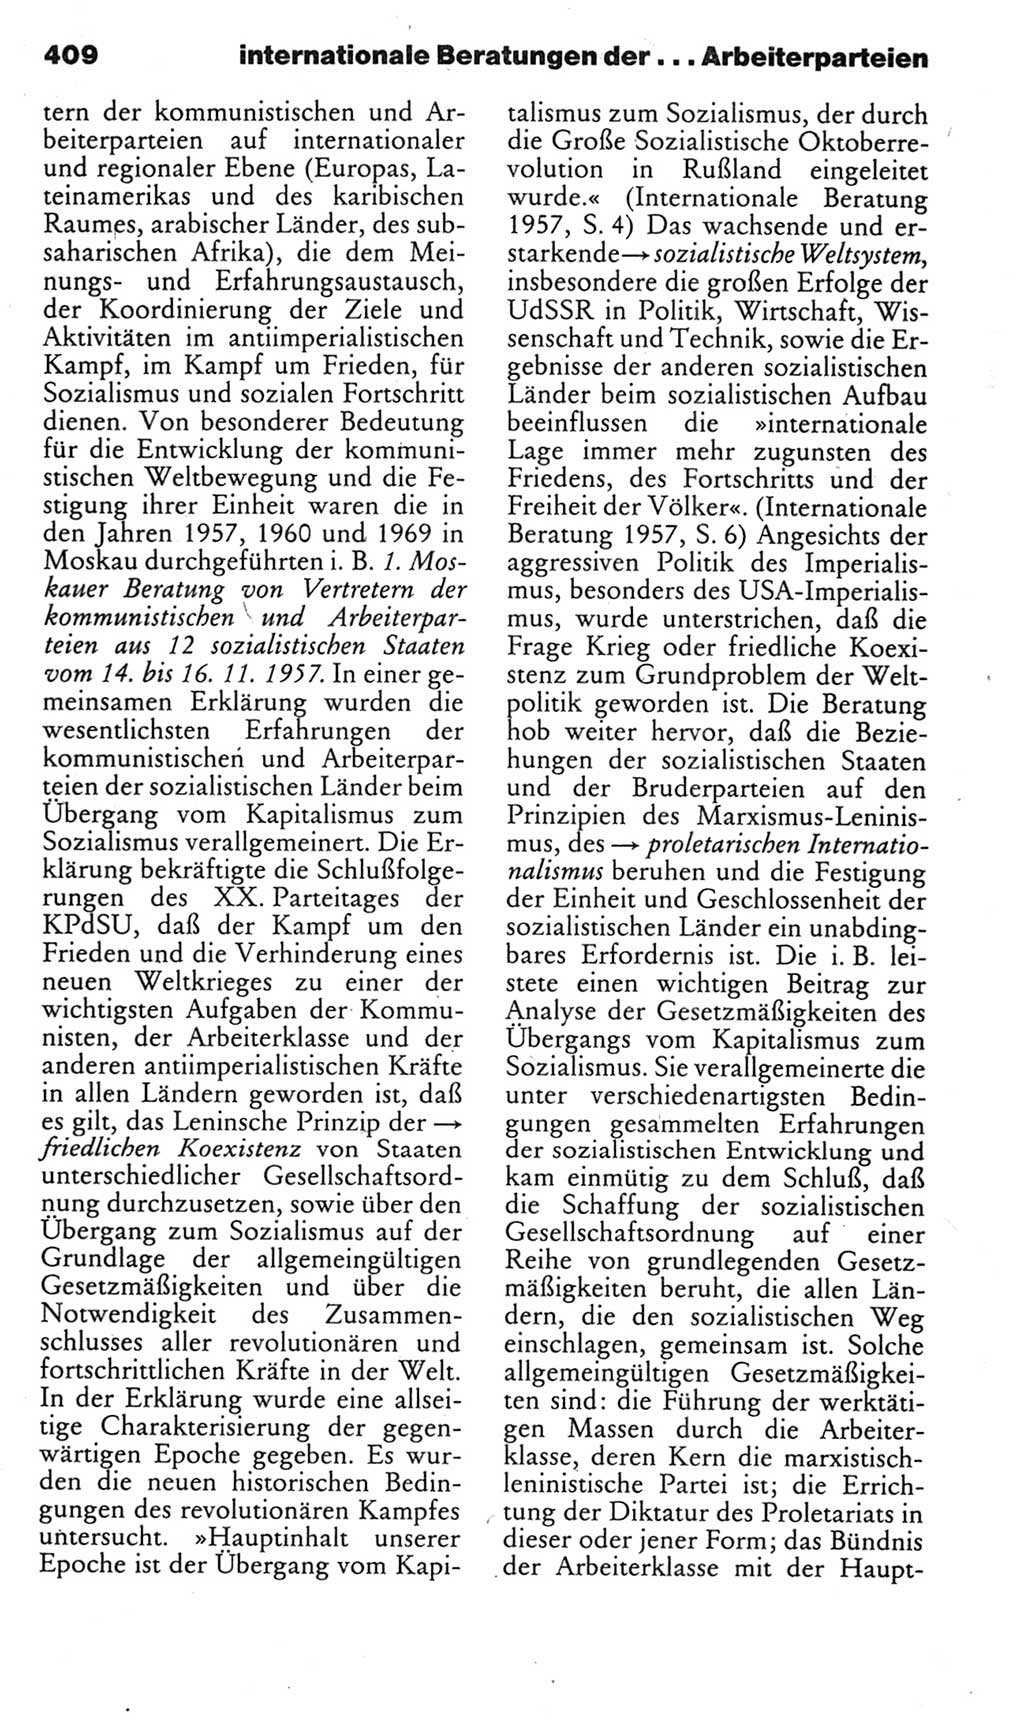 Kleines politisches Wörterbuch [Deutsche Demokratische Republik (DDR)] 1985, Seite 409 (Kl. pol. Wb. DDR 1985, S. 409)